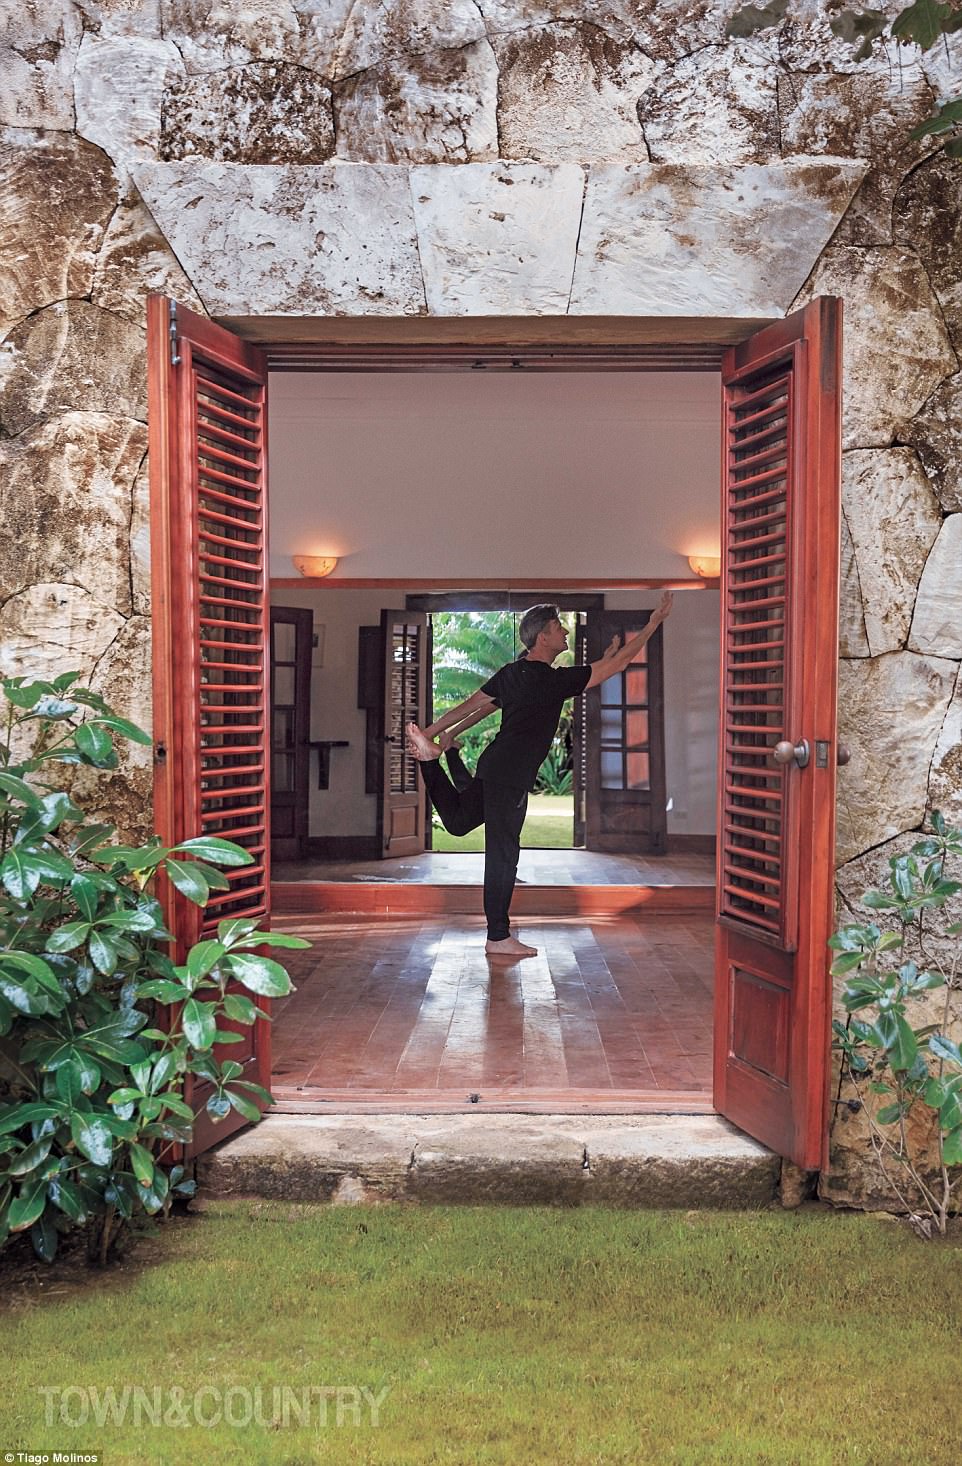 Toques extra: La casa cuenta con un estudio de danza para que el coreógrafo desarrolle nuevas piezas, así como un espacio para recibir a los bailarines visitantes.